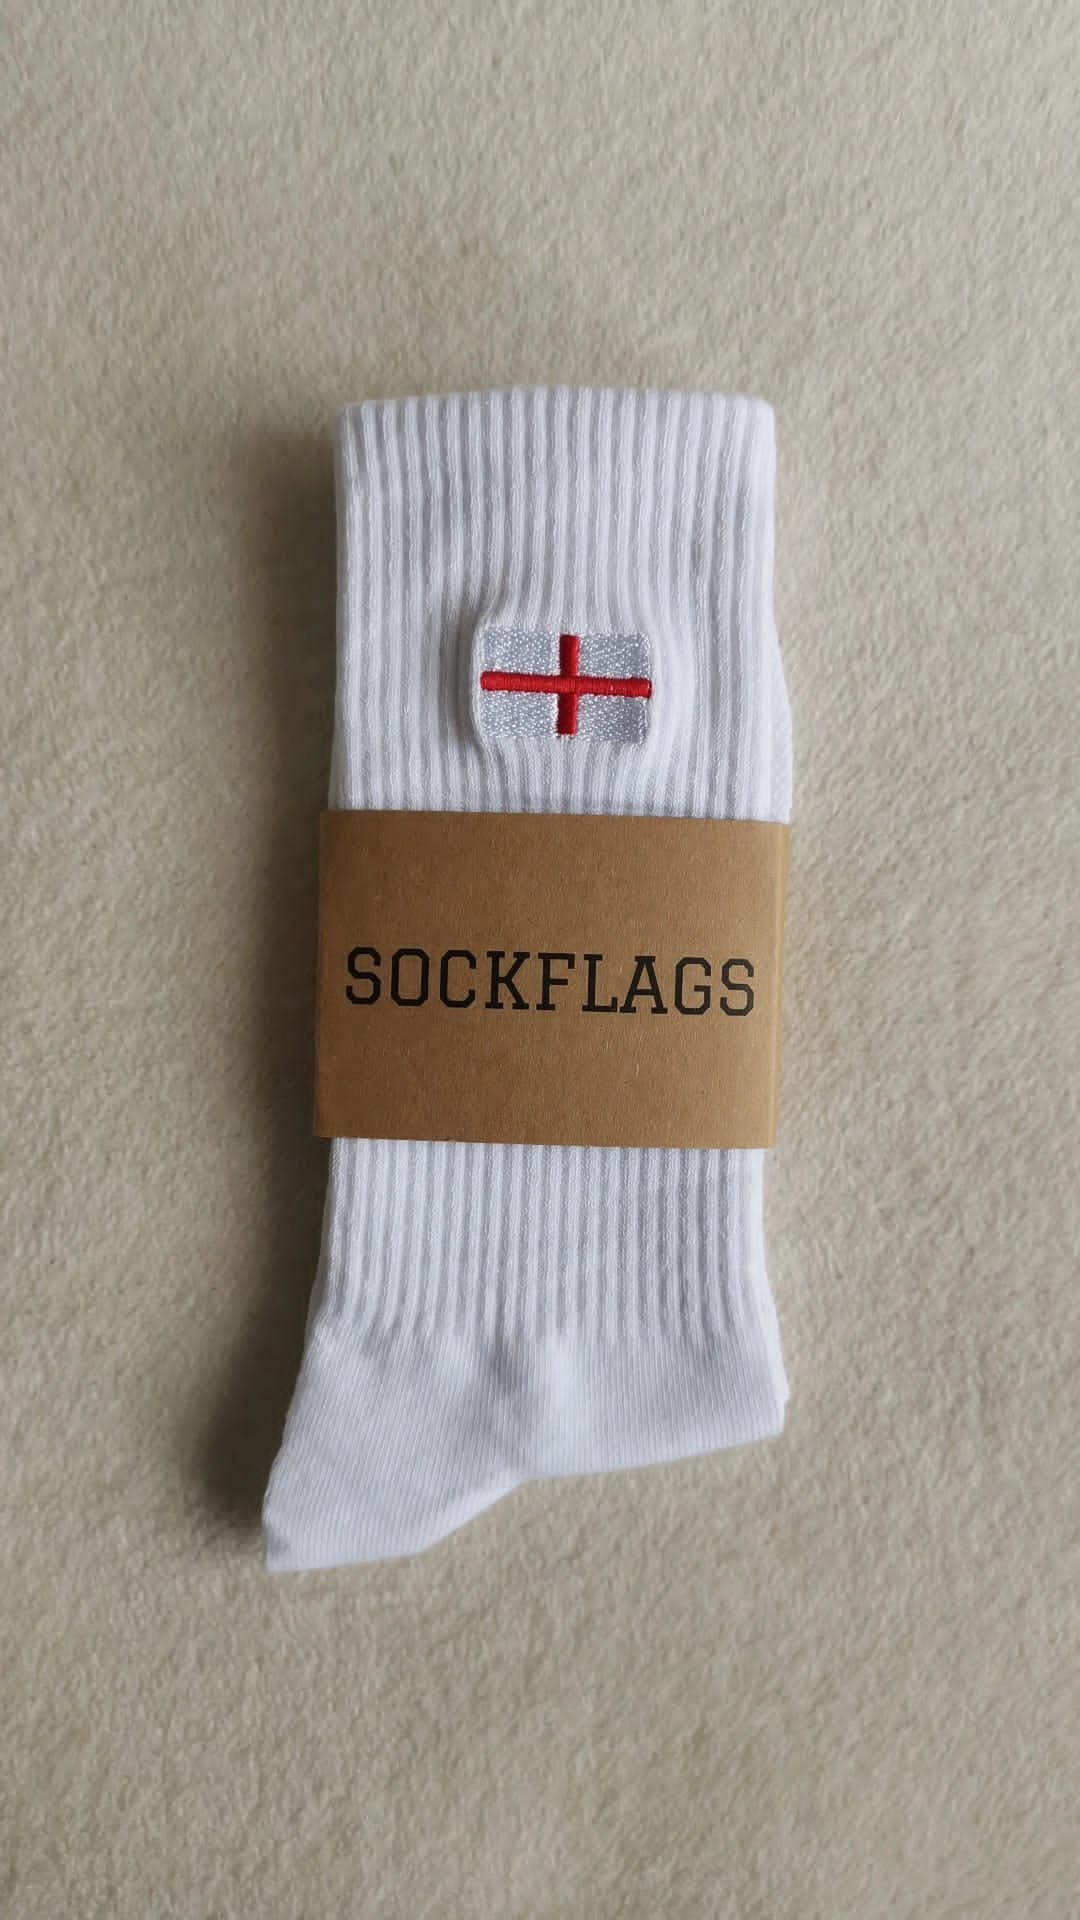 England Socken Flagge Sockflags hochwertige Stickerei Sneaker Sneakersocken